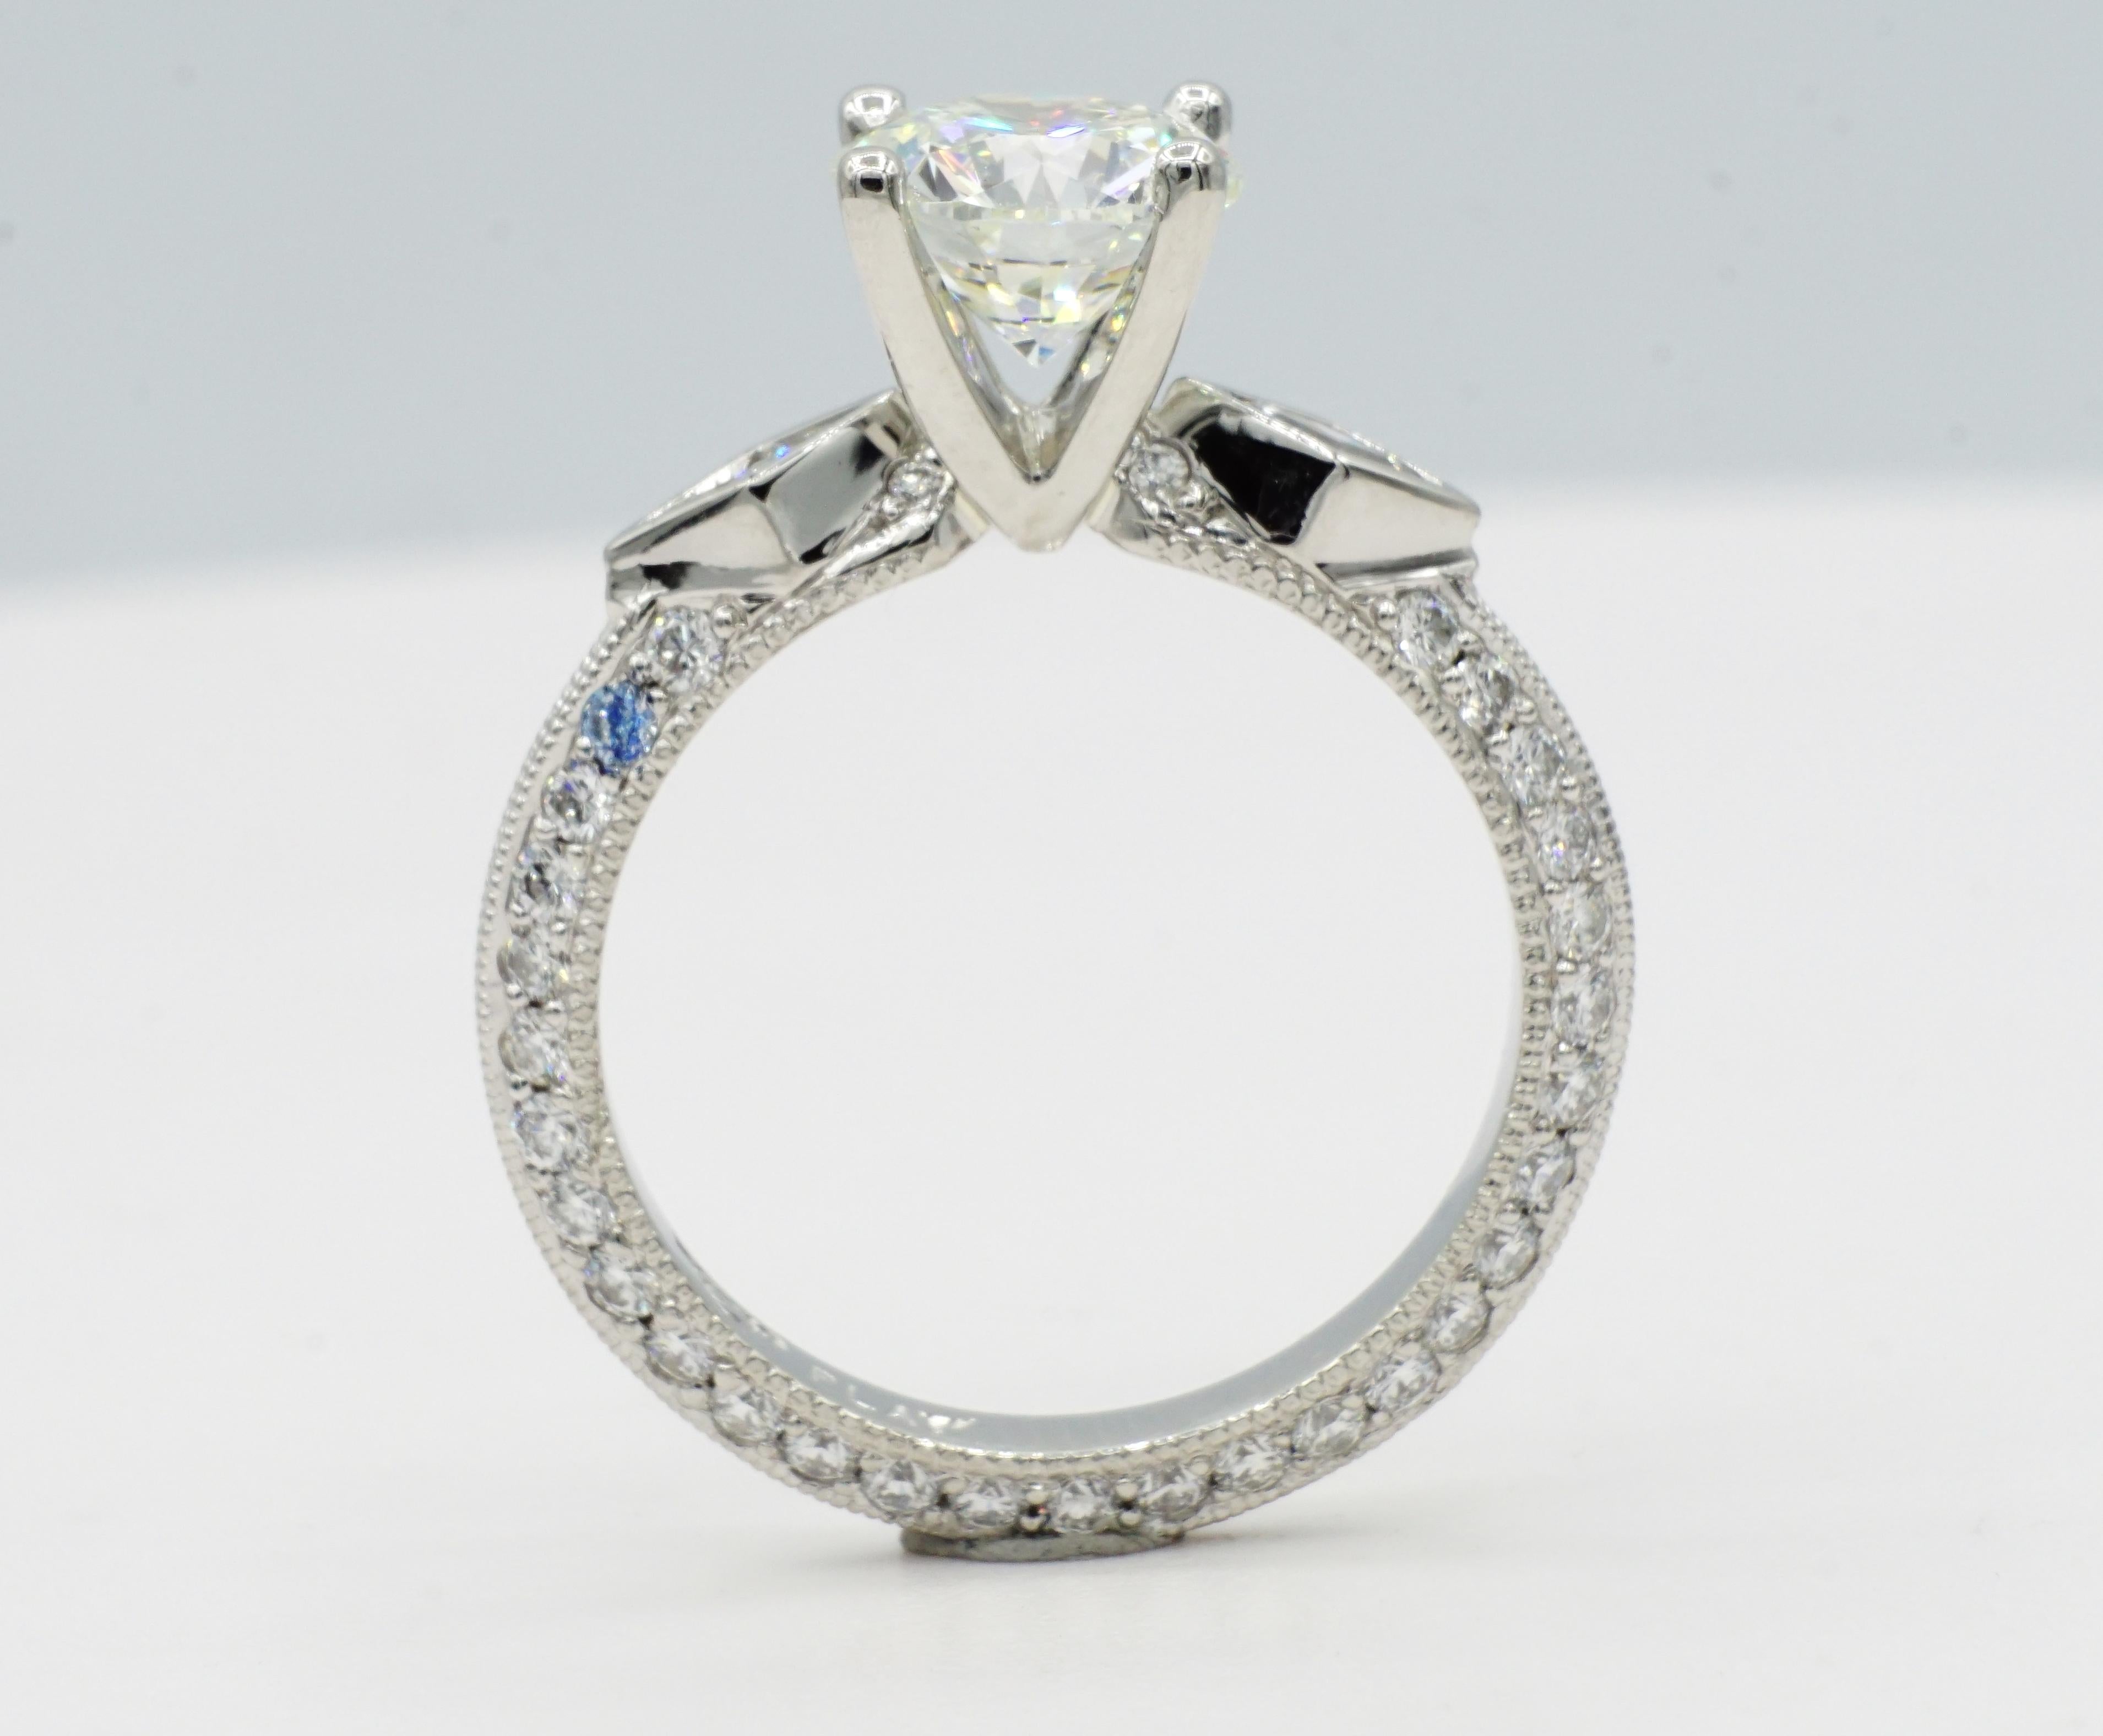 Magnifique bague de fiançailles en platine avec un diamant rond de 1,59ct de couleur H et de pureté VS2. Le diamant central est très bien poli, symétrique et taillé.  La pierre centrale est sertie dans une monture en V personnalisée, accentuée par